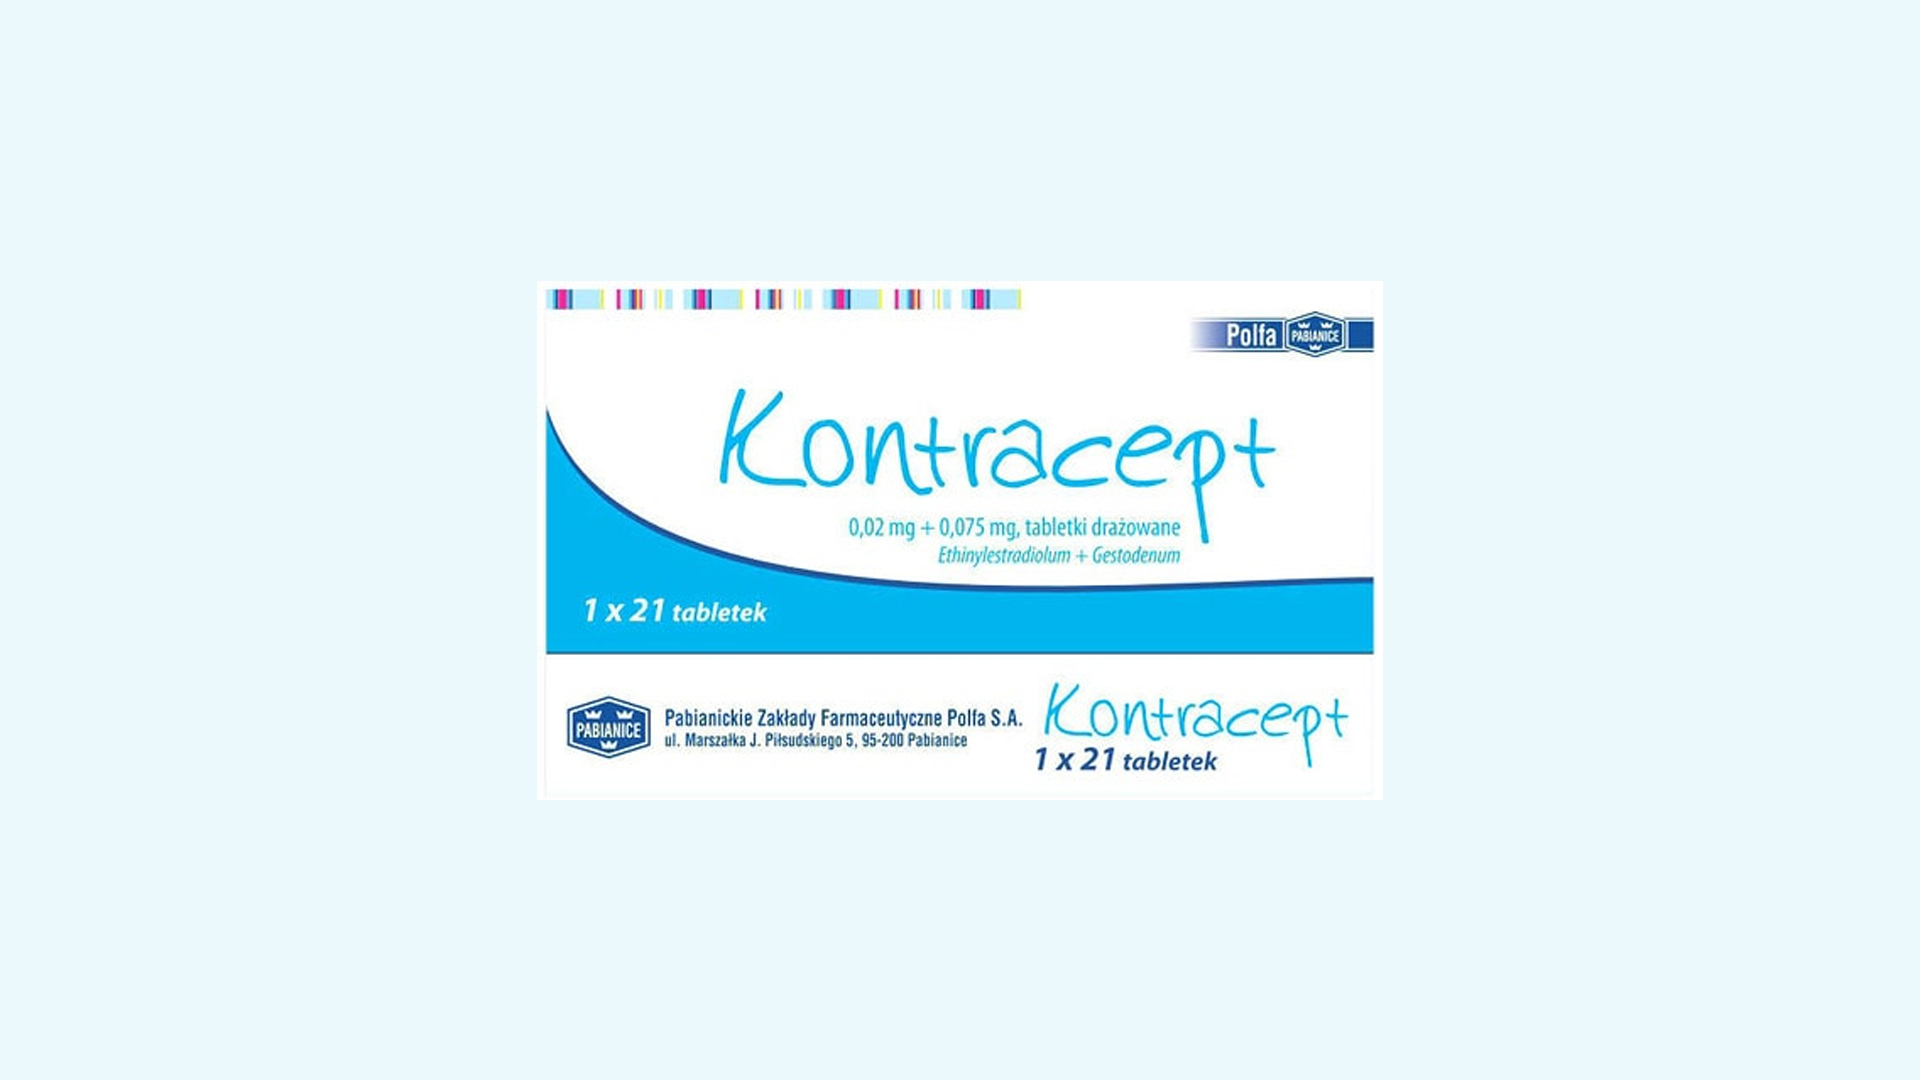 Kontracept – informacje o leku  dawkowanie oraz przeciwwskazania